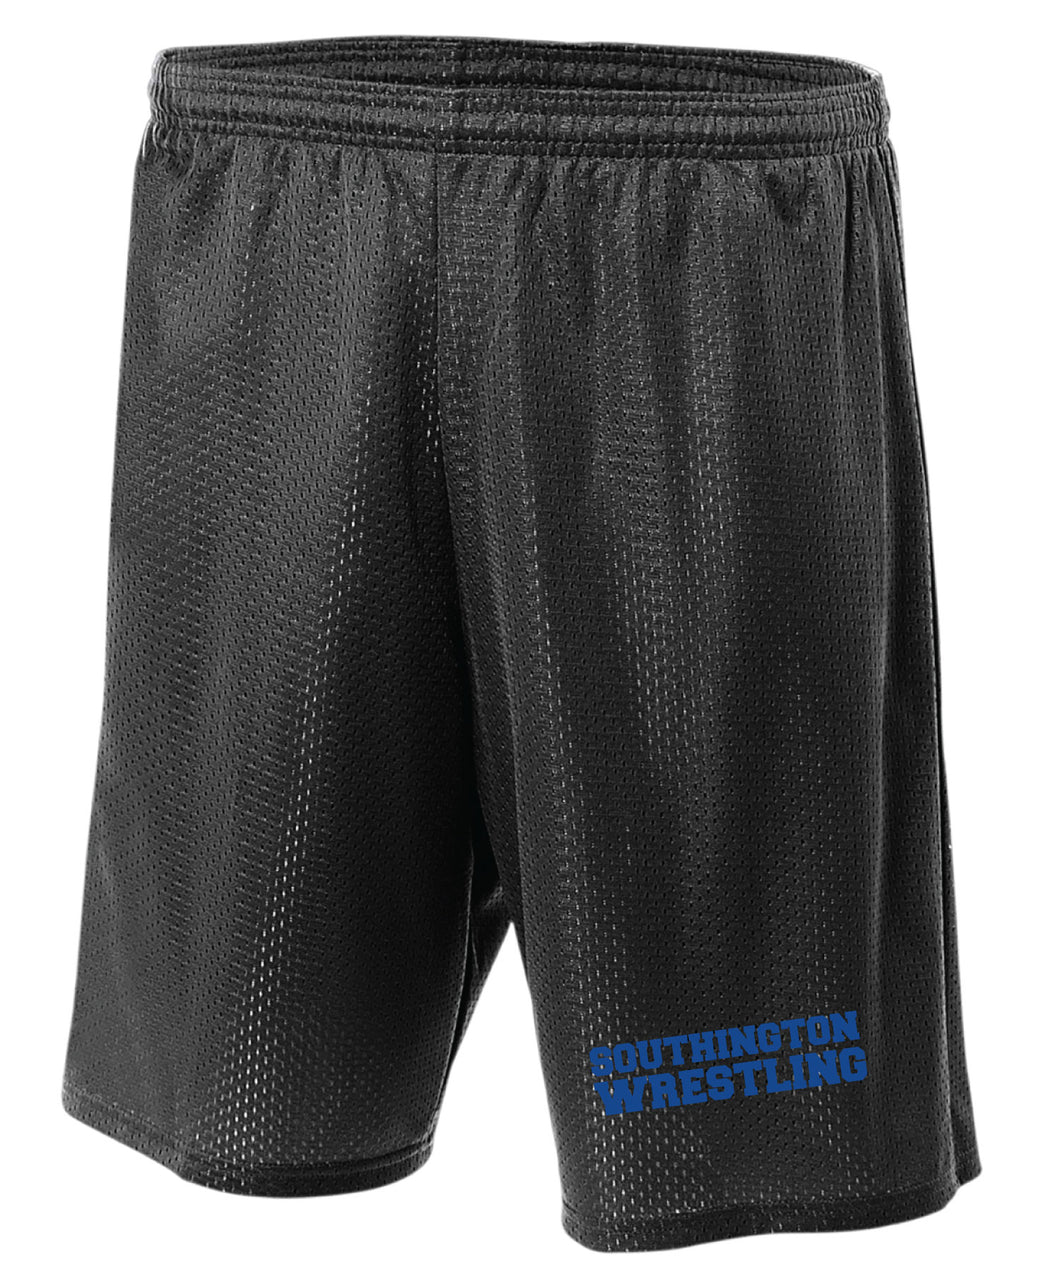 Southington HS Tech Shorts - 5KounT